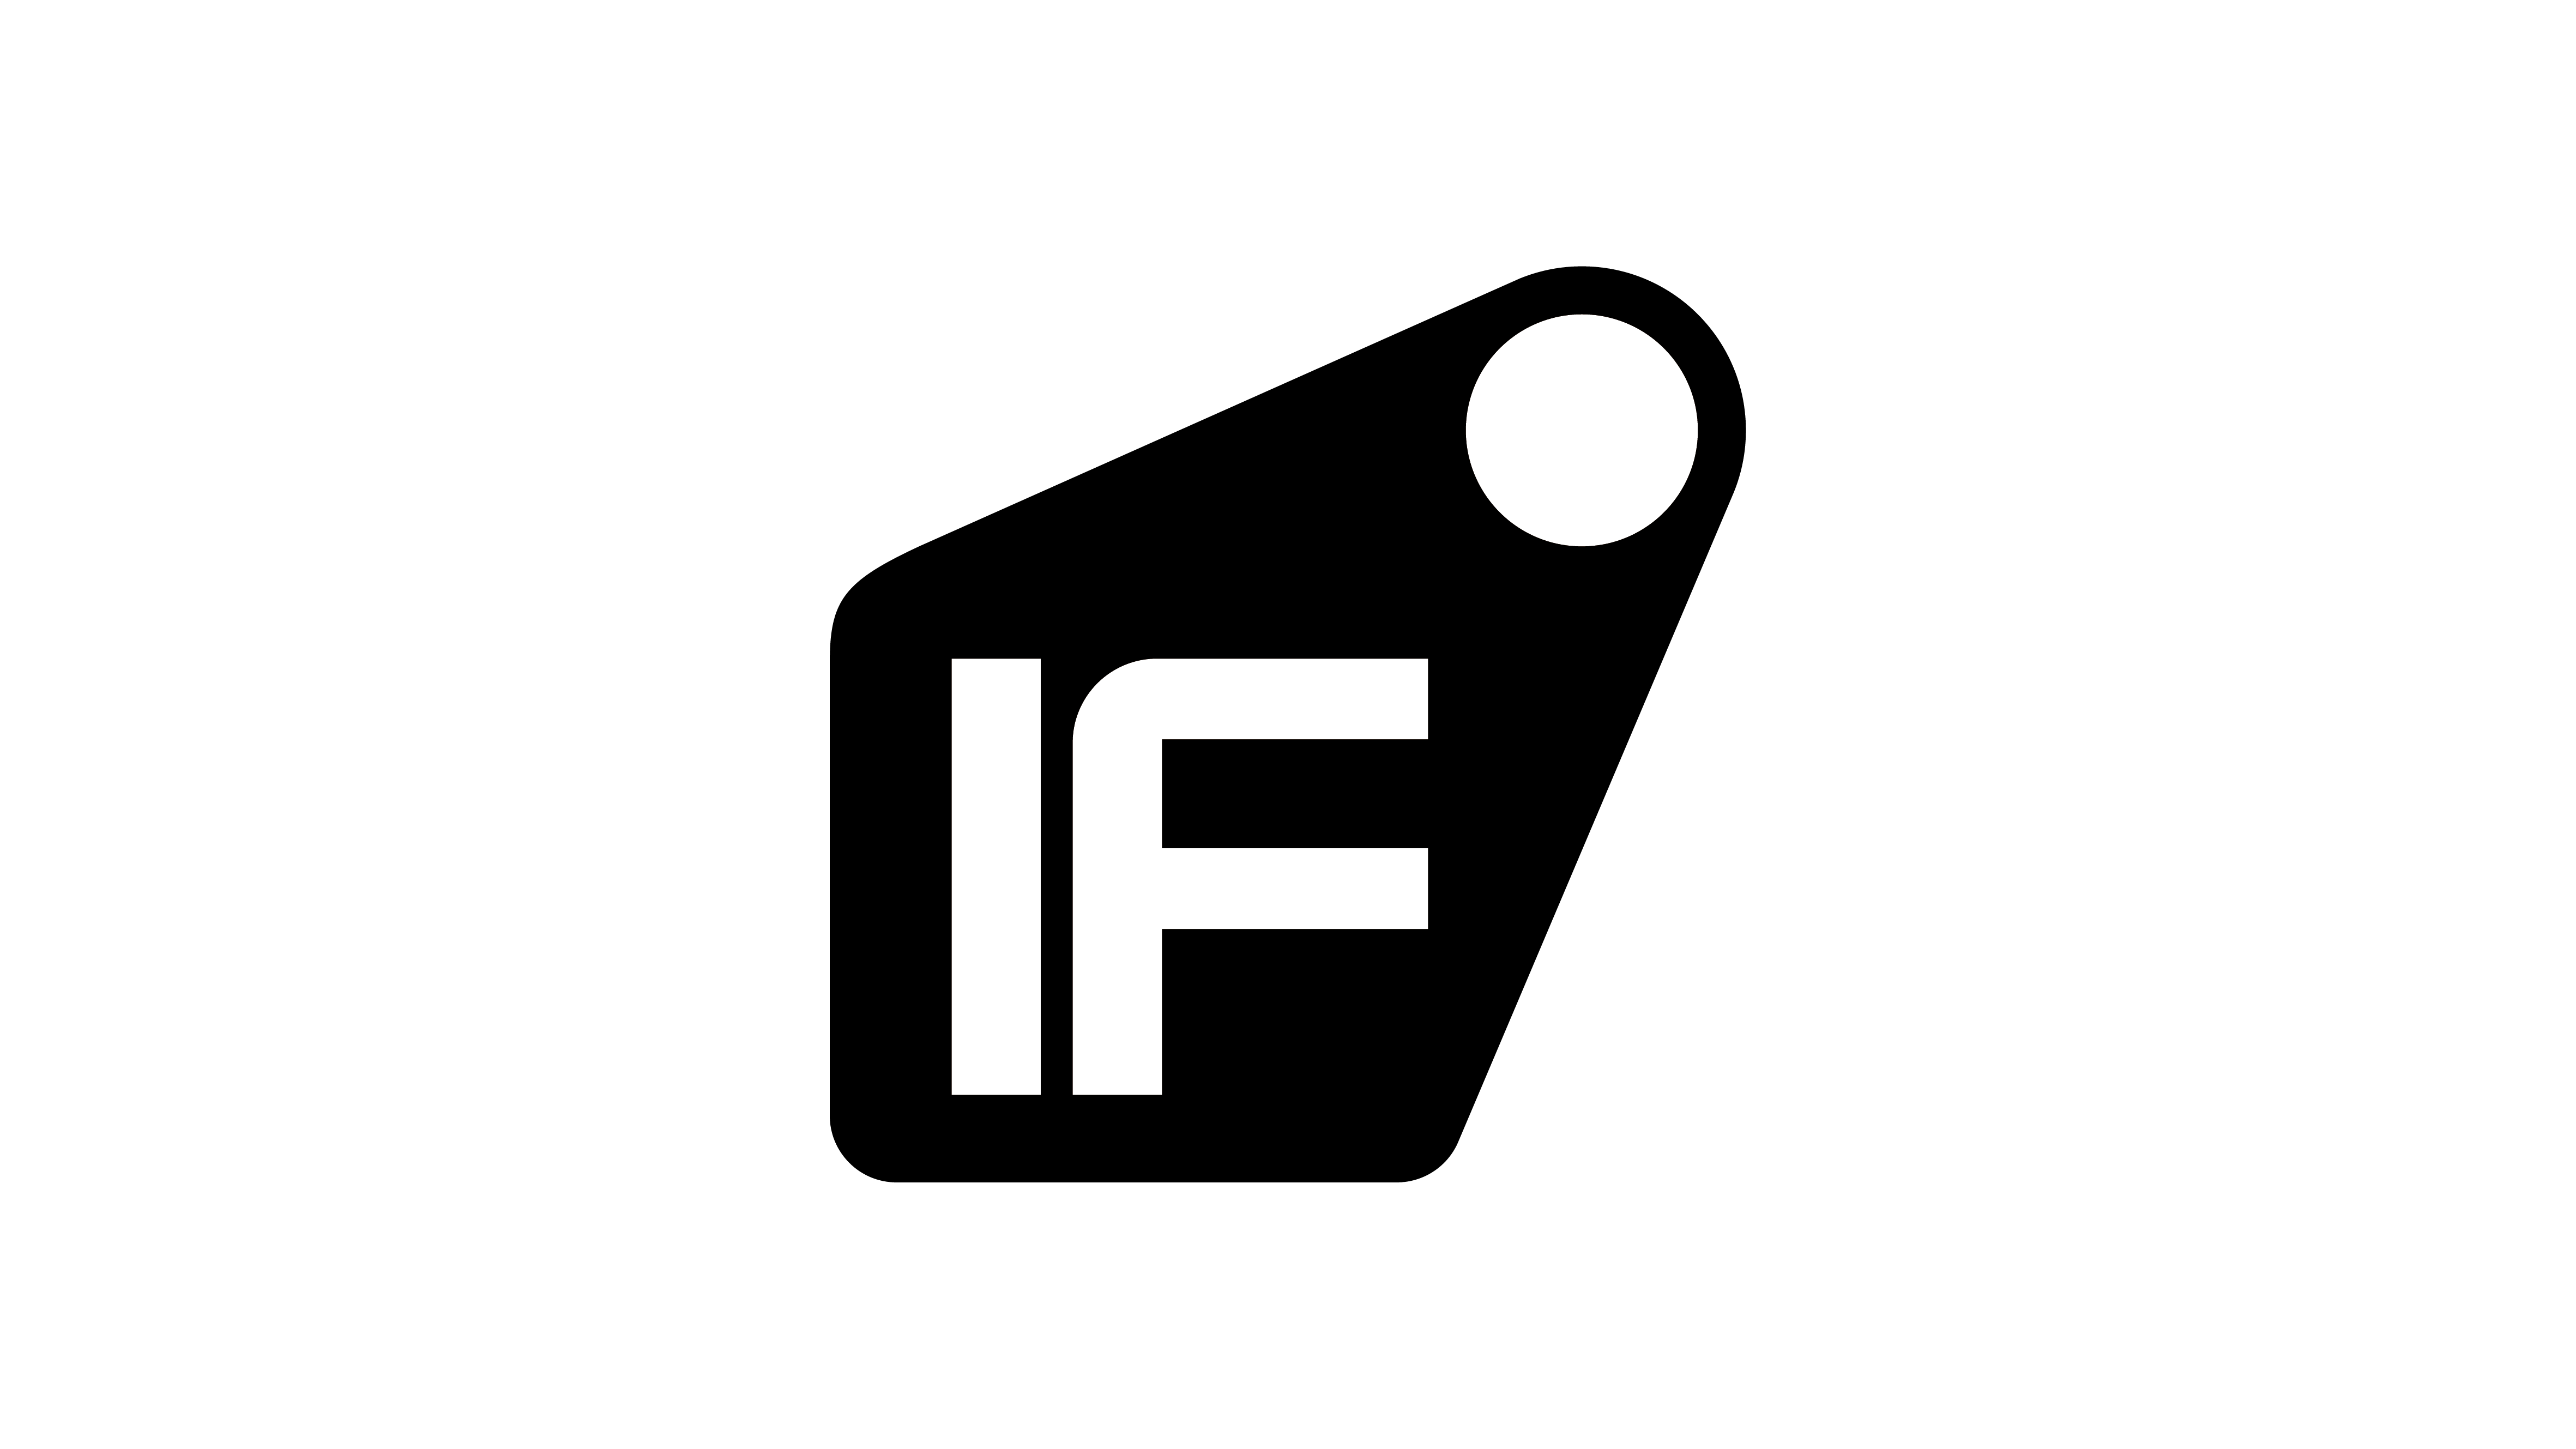 Inovāciju foruma logo